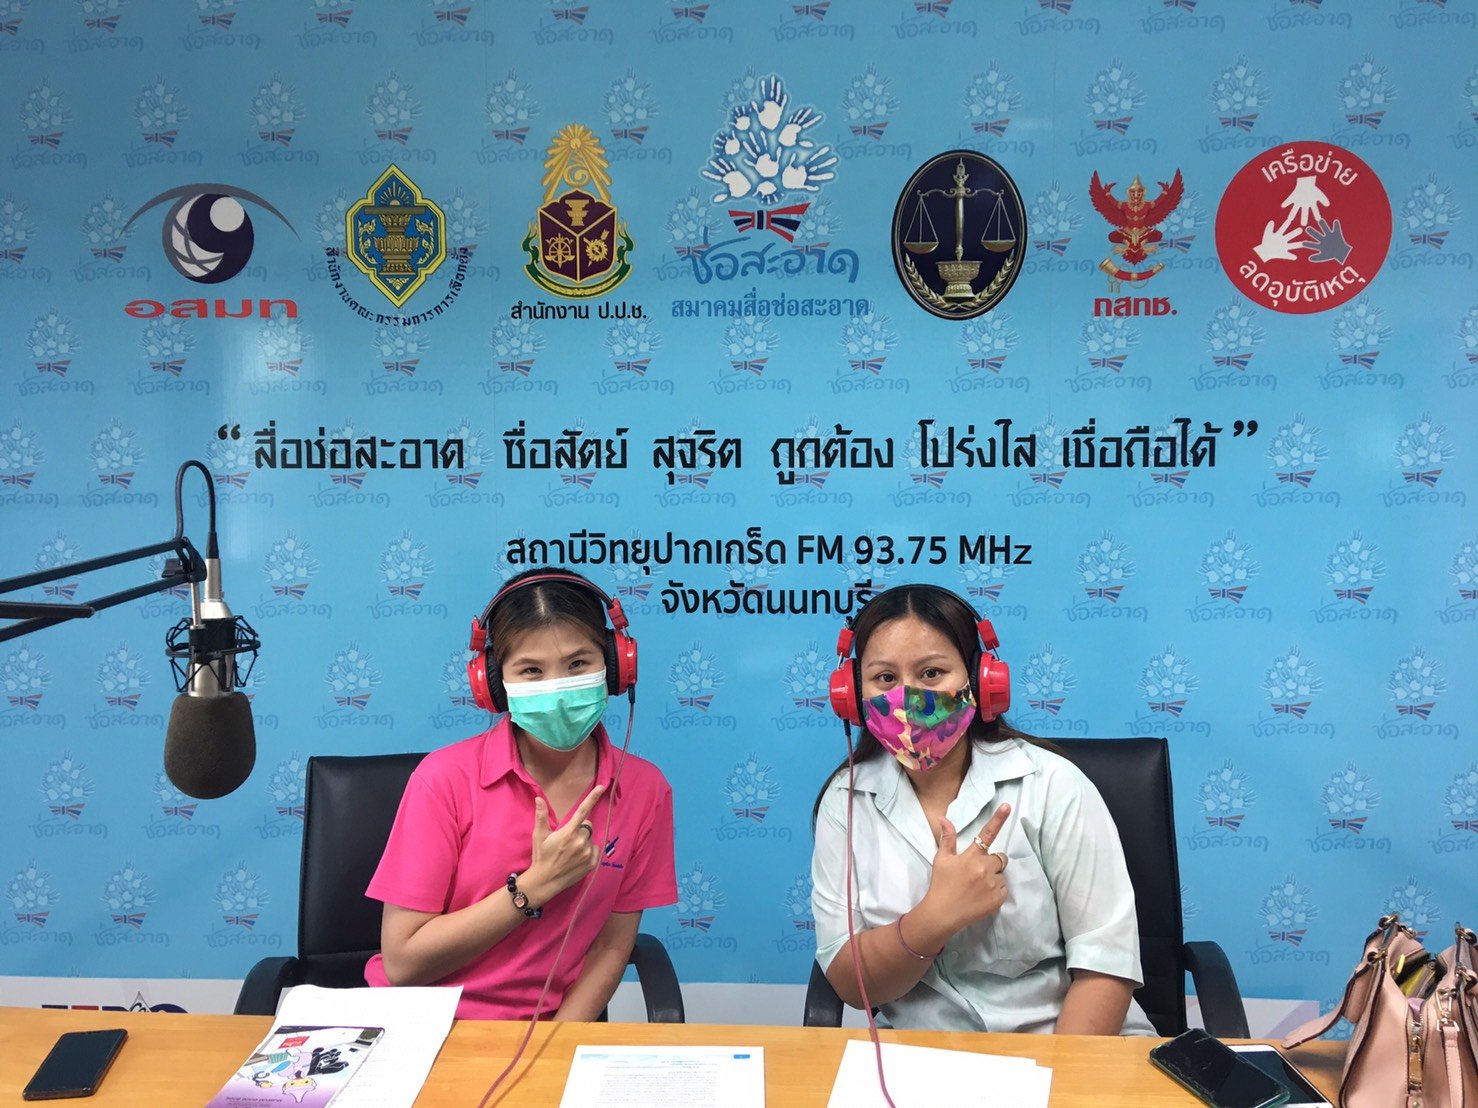 รายการ “คนไทยไม่ทนต่อการทุจริต” วันเสาร์ที่ 21 สิงหาคม 2564 เวลา 18.00-18.30 น.